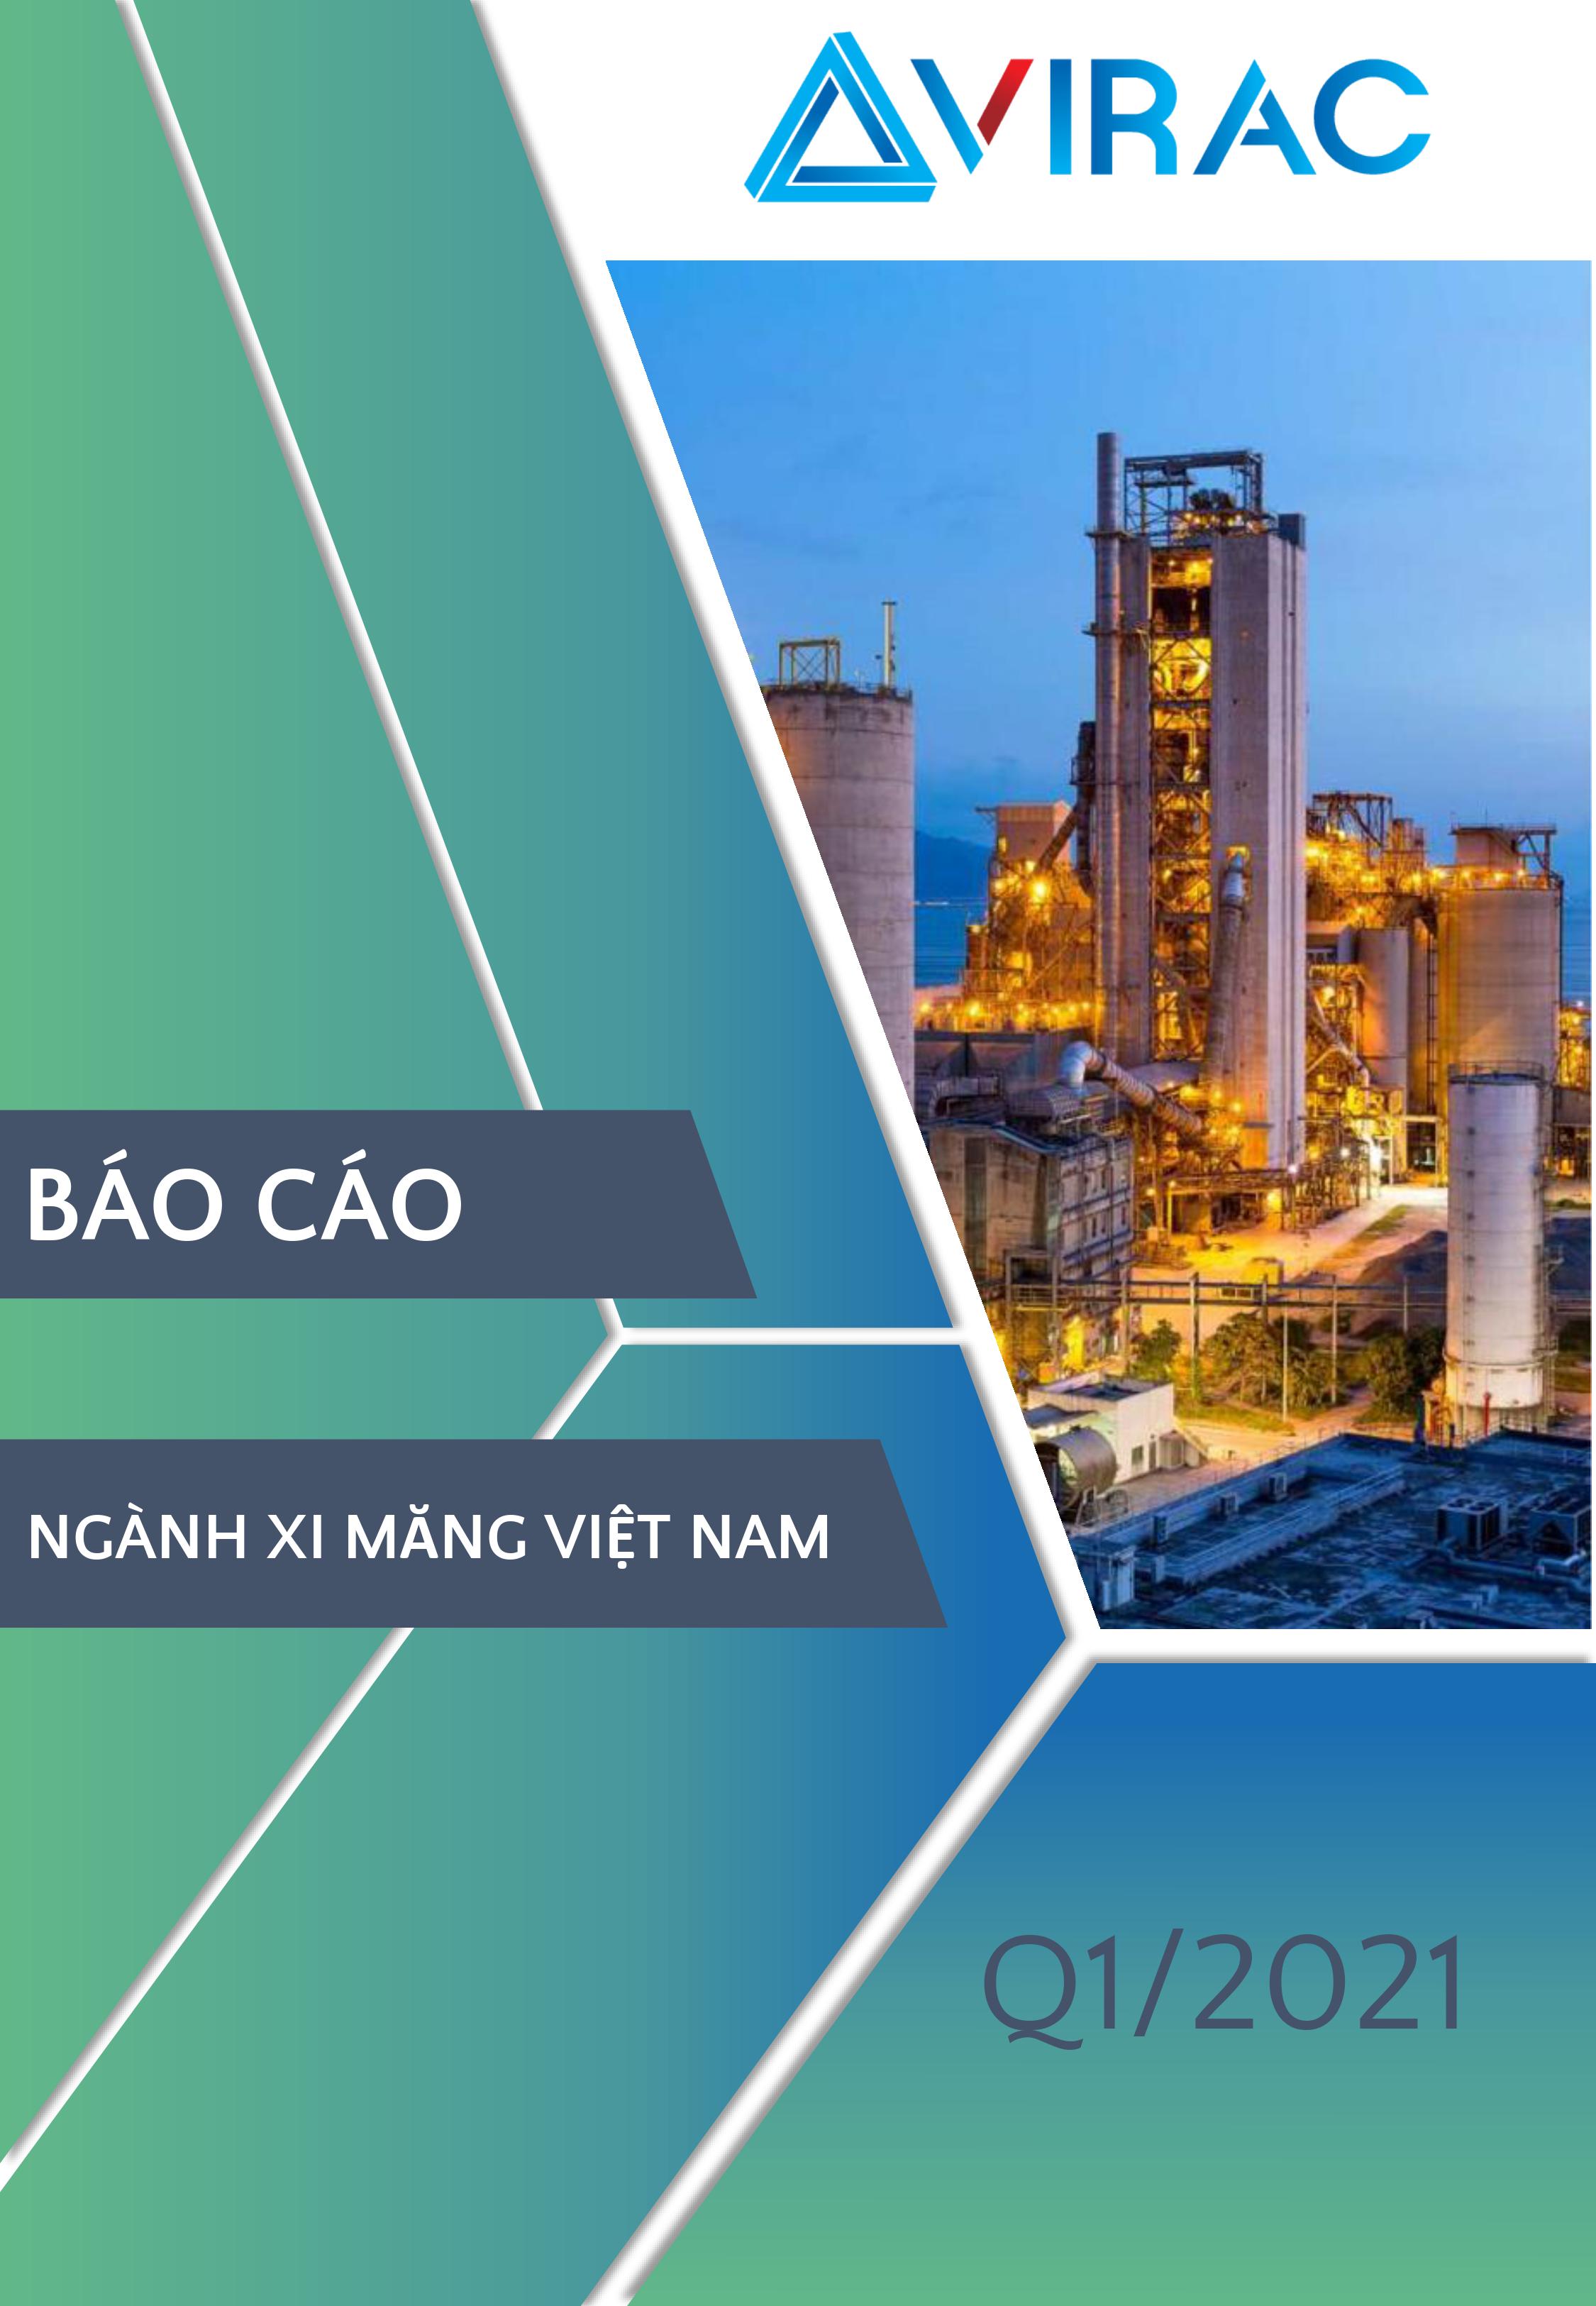 Vietnam-Cement-Industry